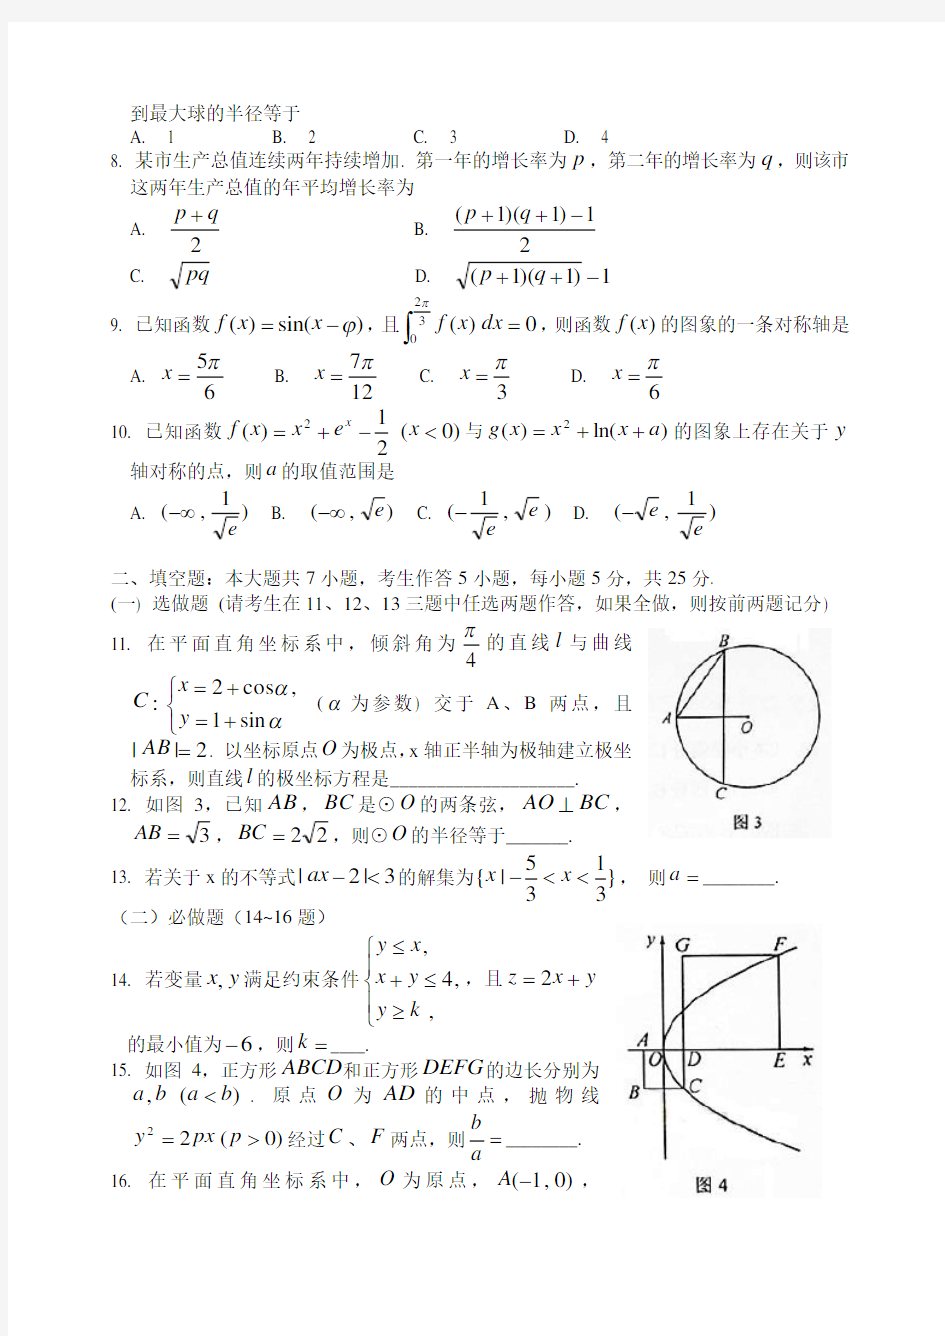 2014年高考湖南理科数学试题及答案(详解纯word版)